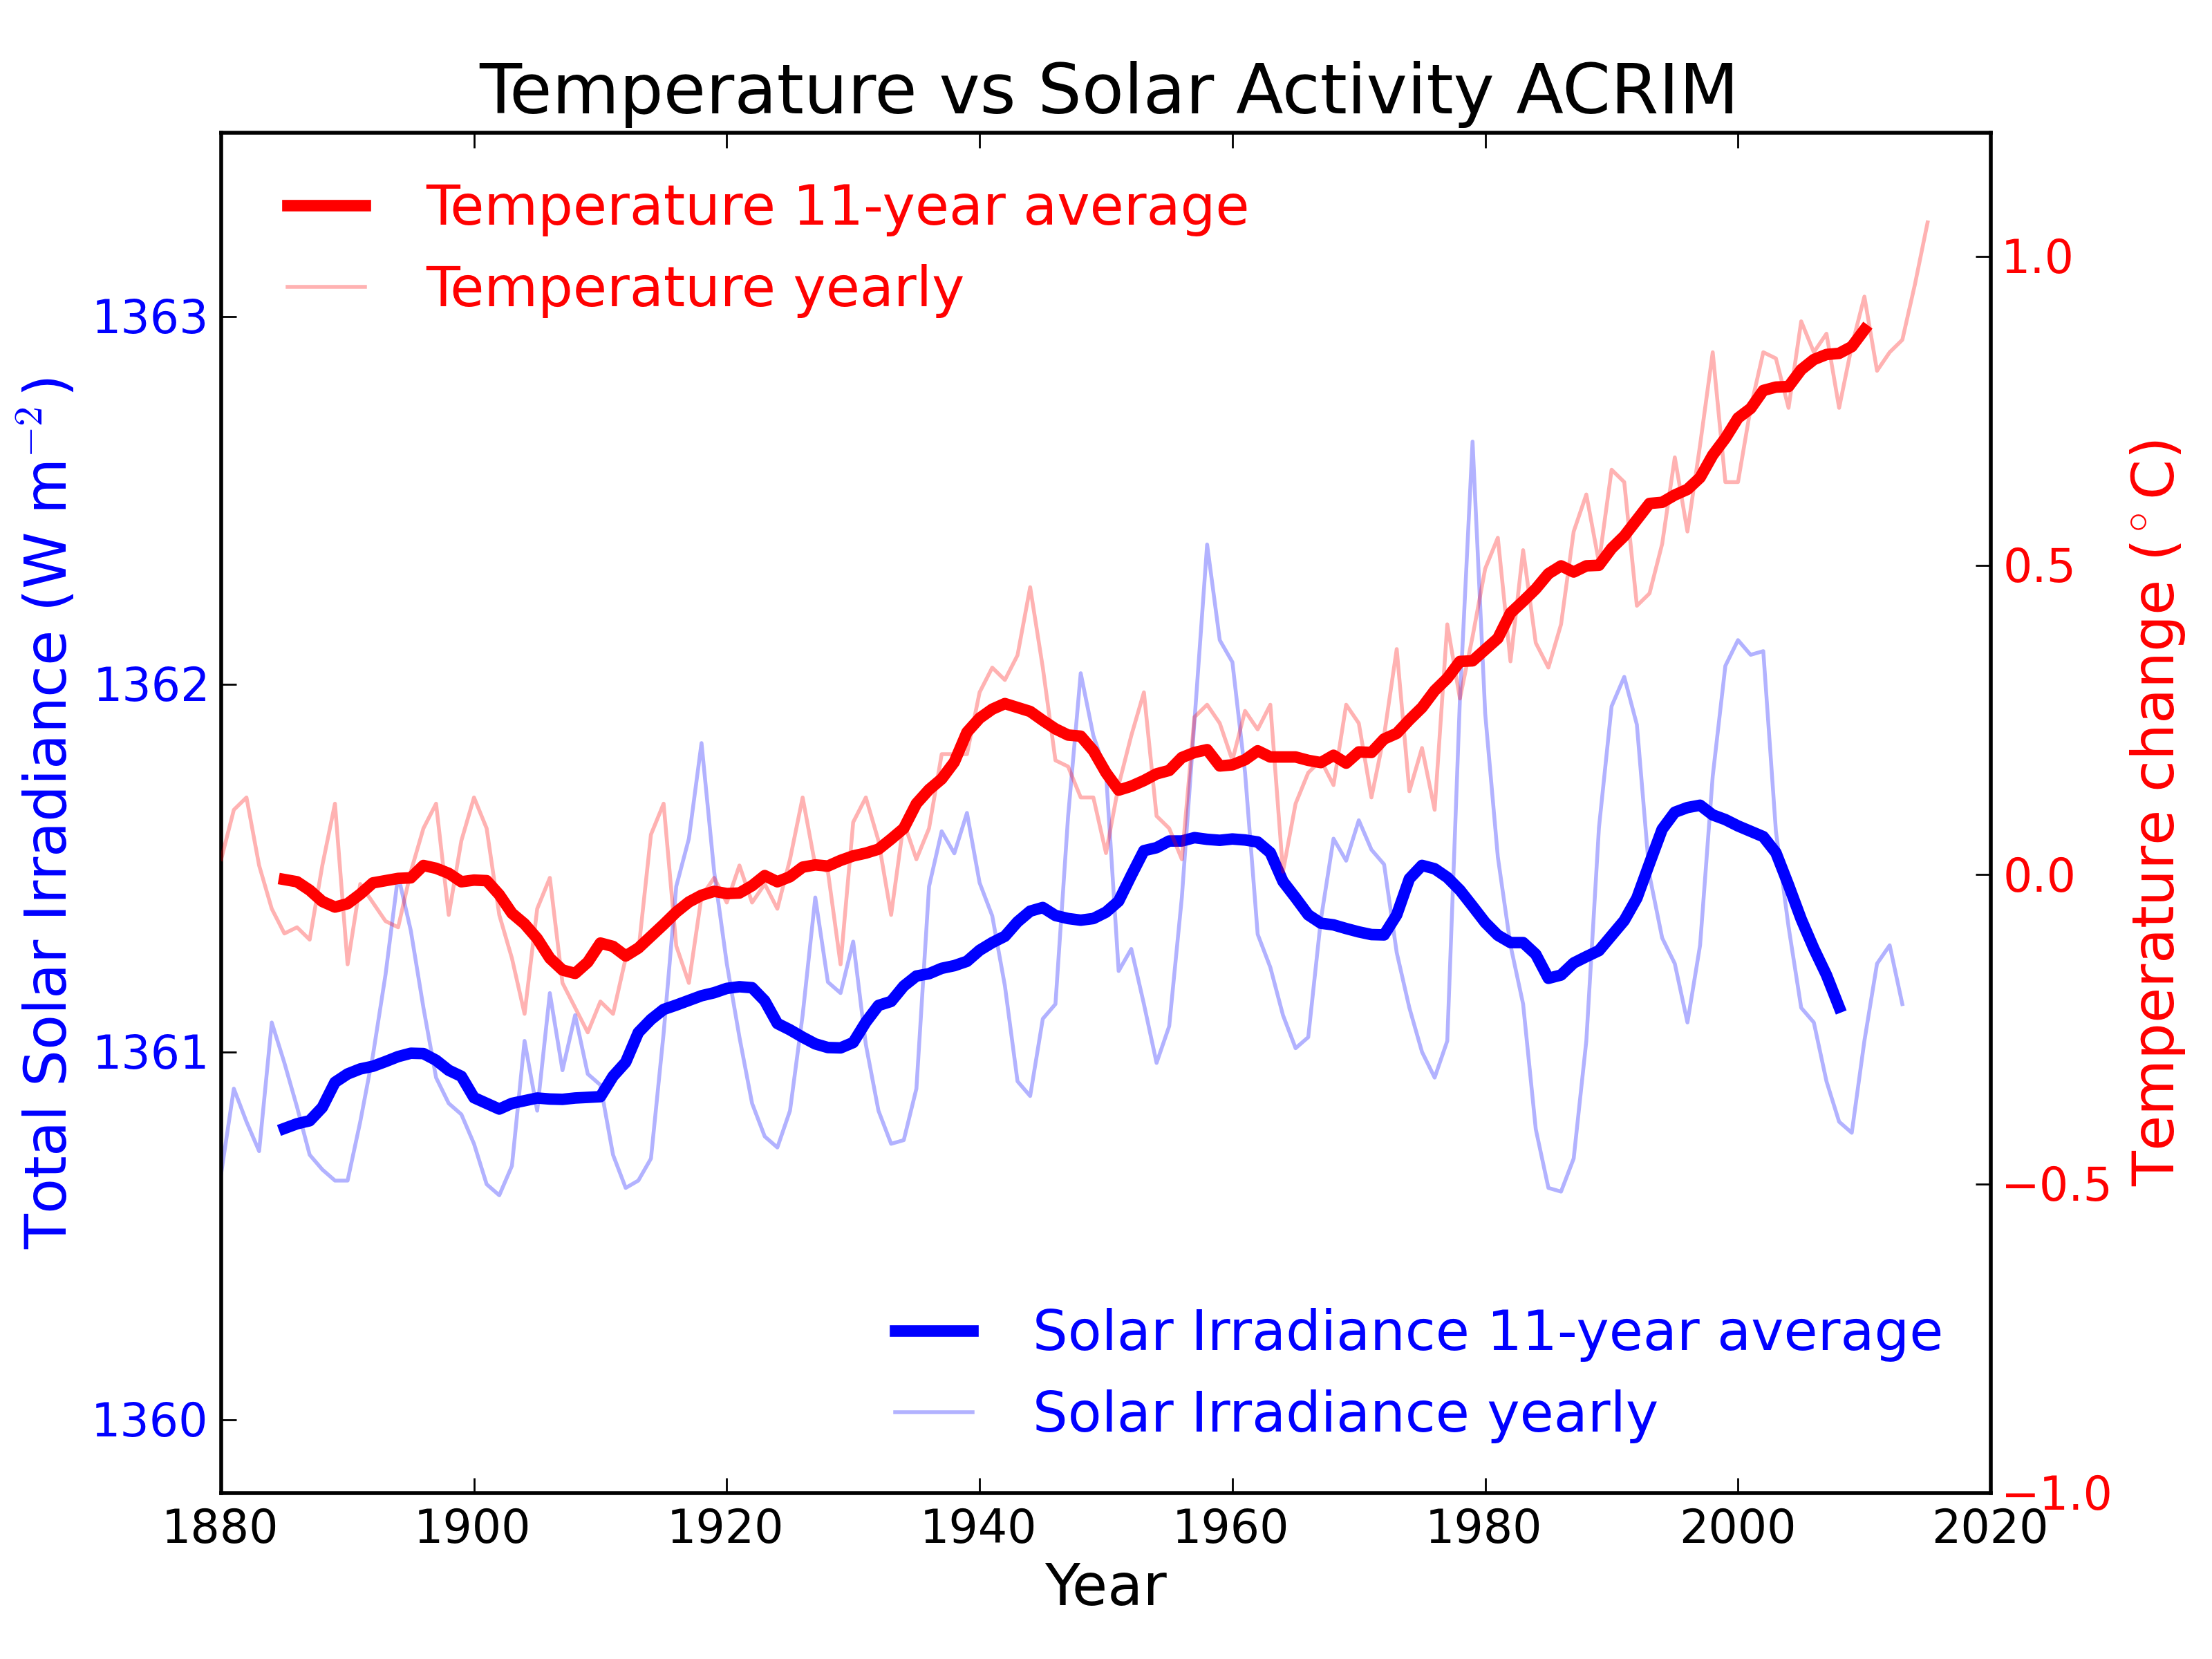 Temperature versus solar activity using ACRIM